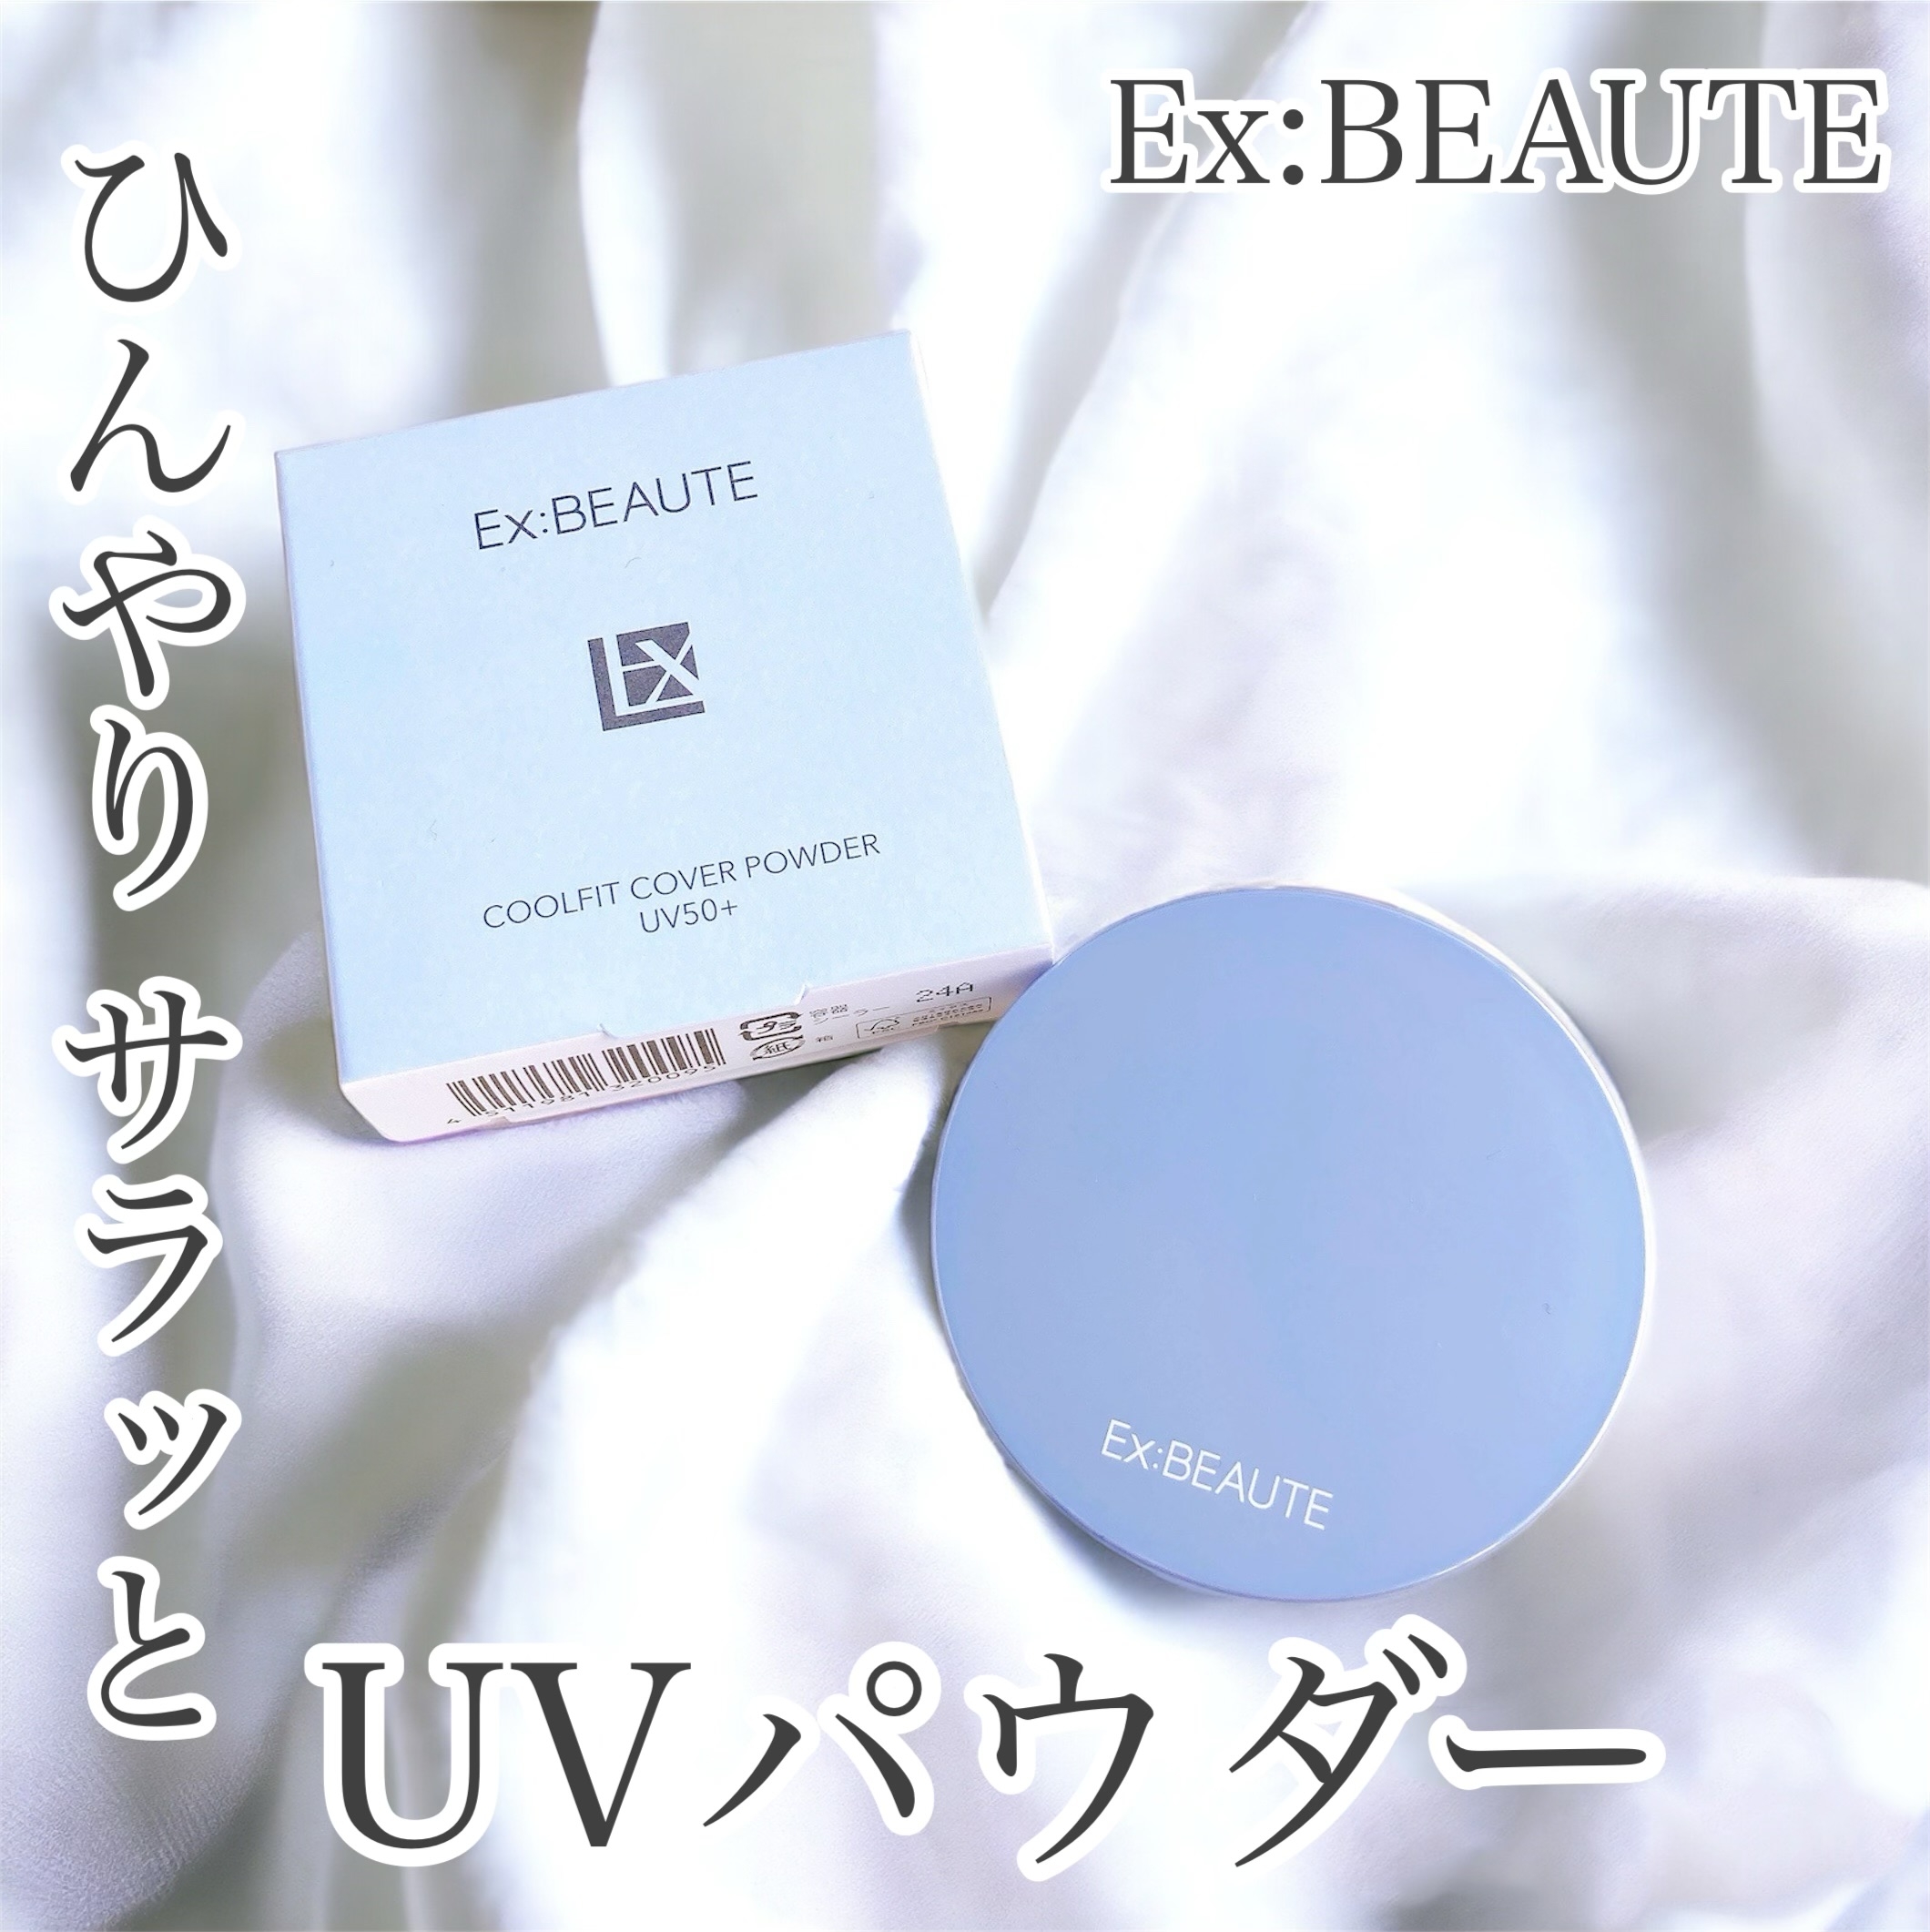 Ex:beaute(エクスボーテ) クールフィットカバーパウダー UV50プラスの良い点・メリットに関するおかんさんの口コミ画像1